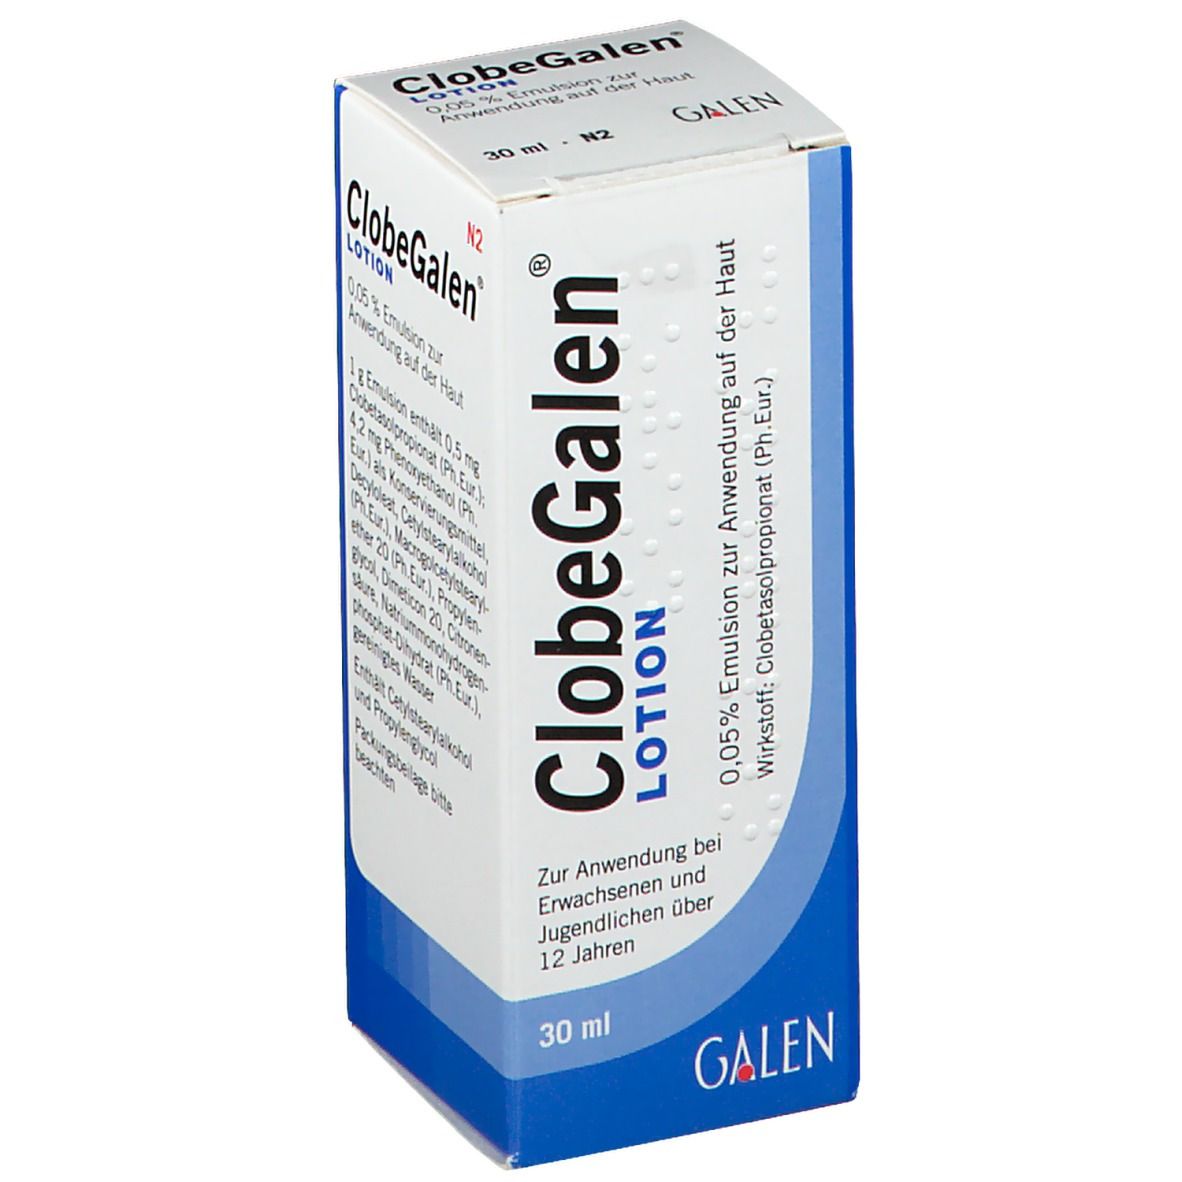 ClobeGalen® Lotion